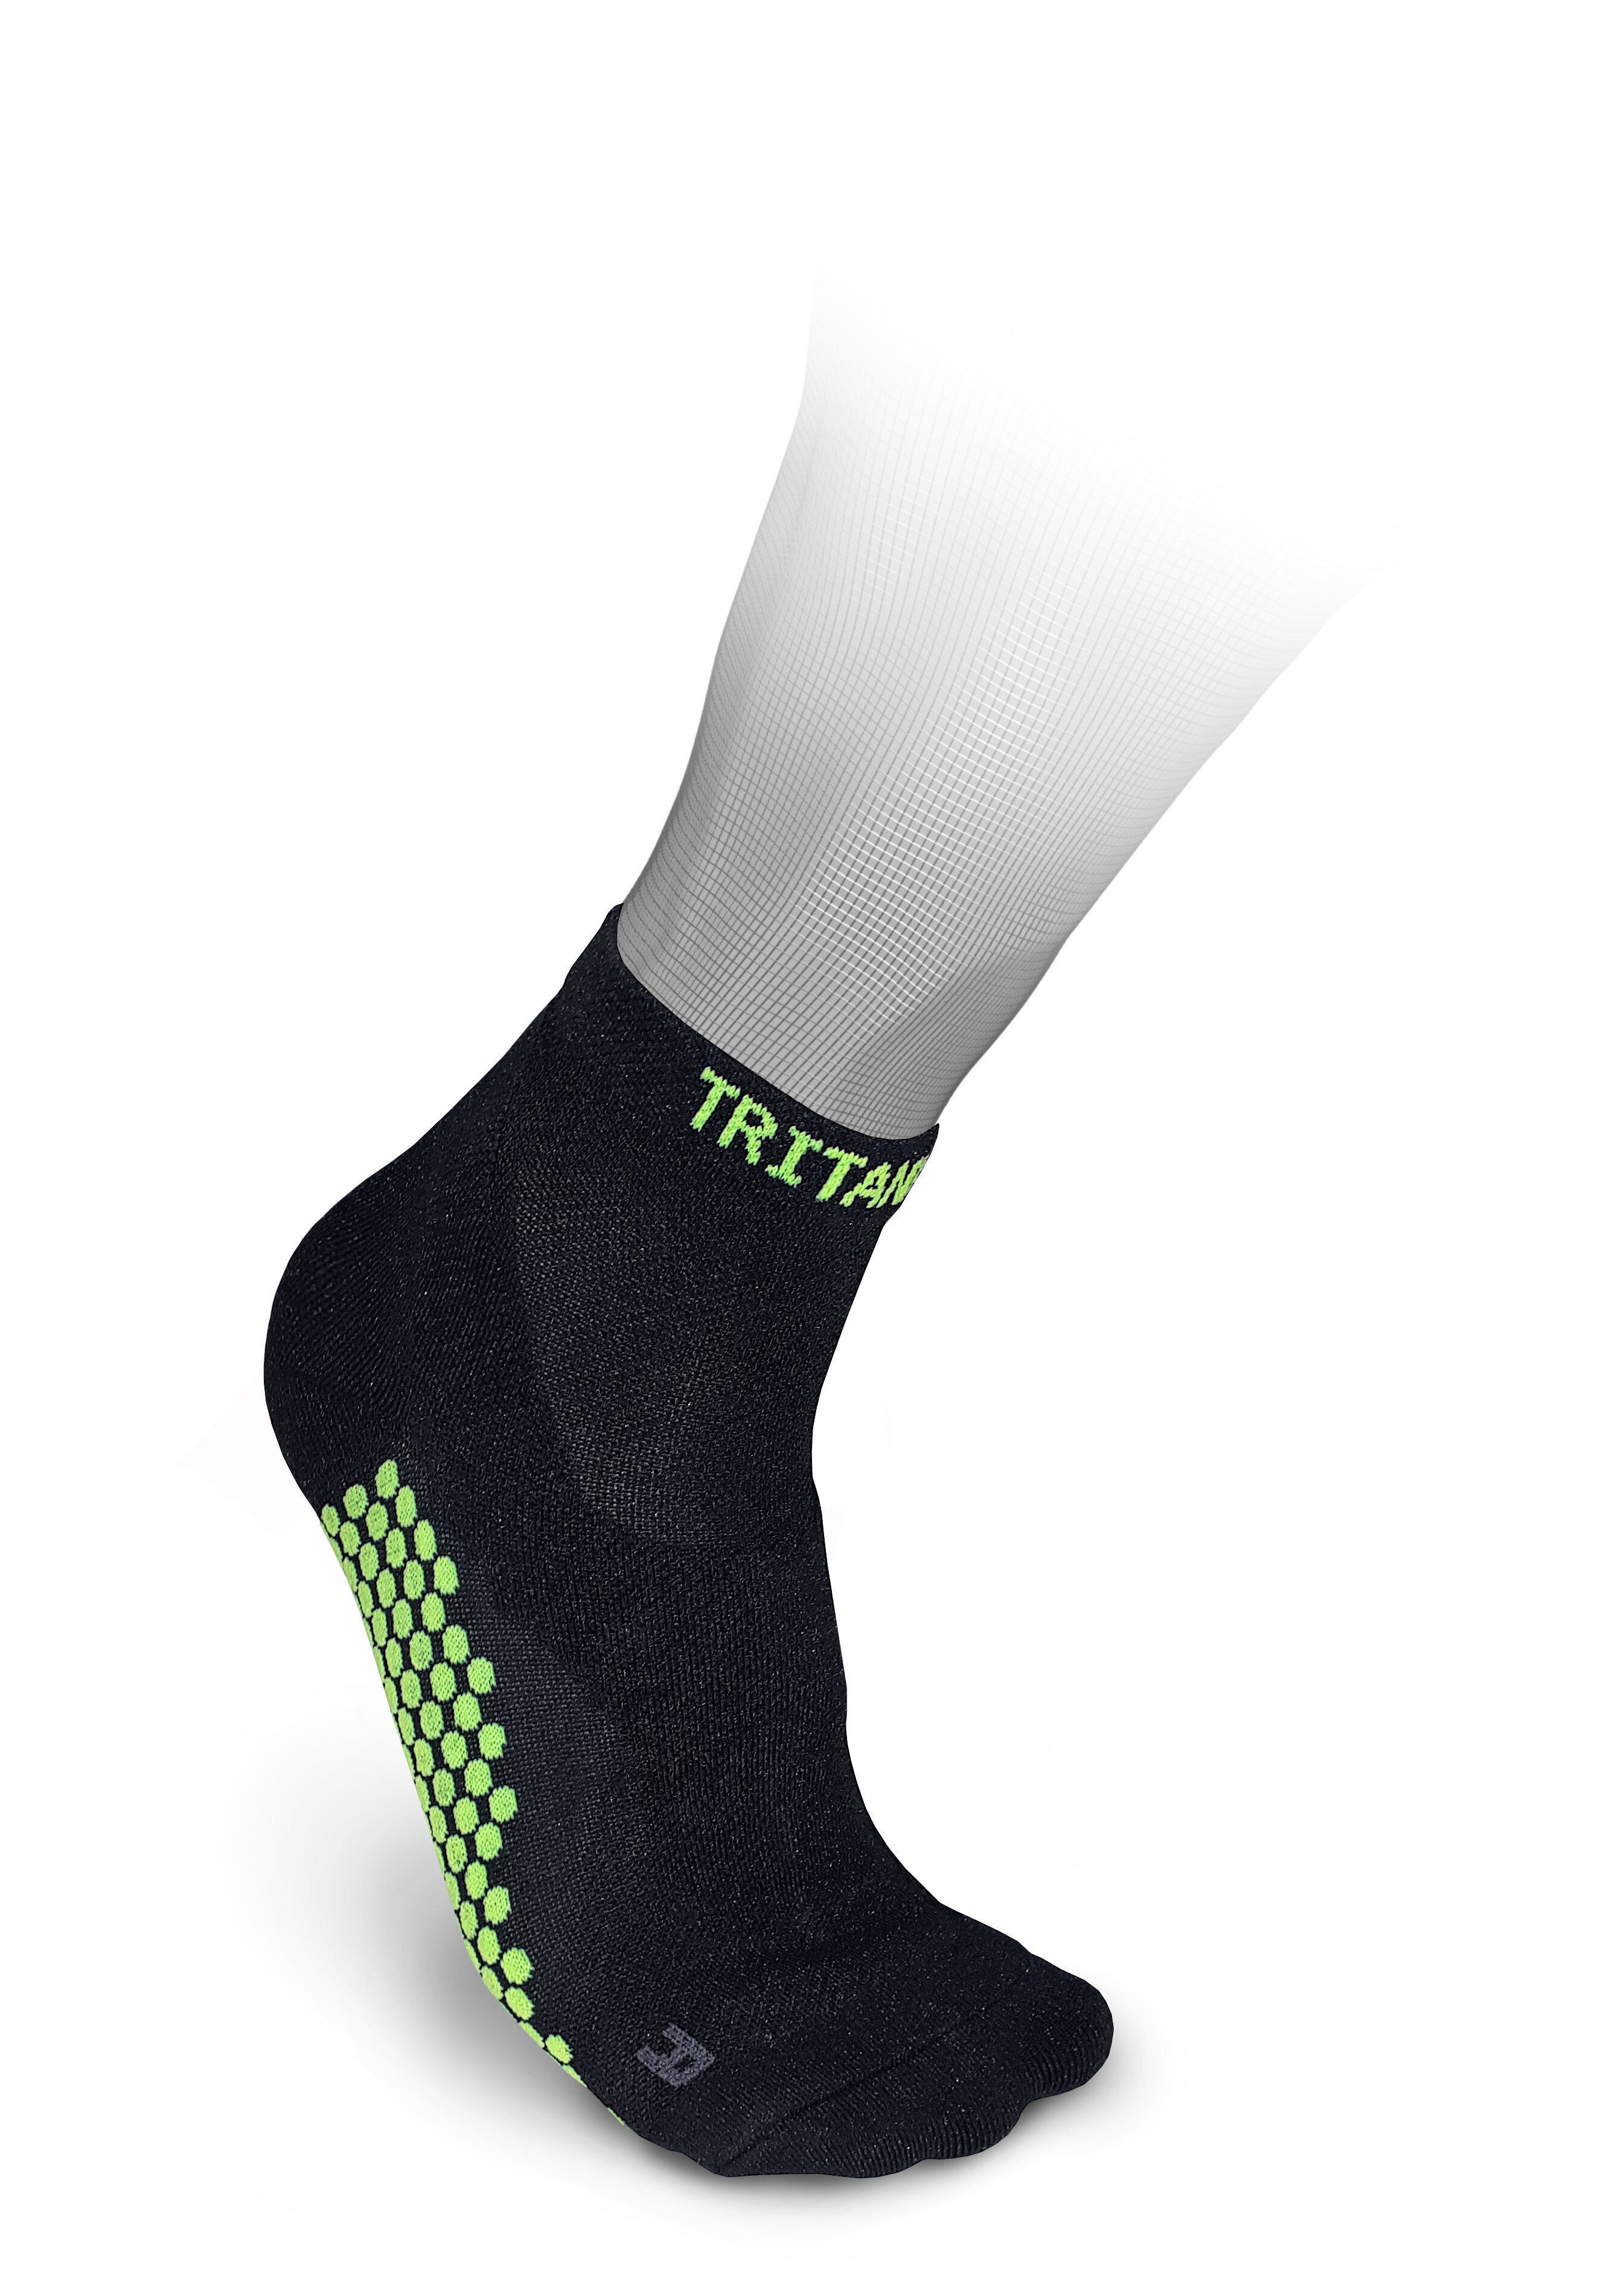 Kompresinės ilgos kojinės Tritanium eXtend Ankle kaina | pigu.lt